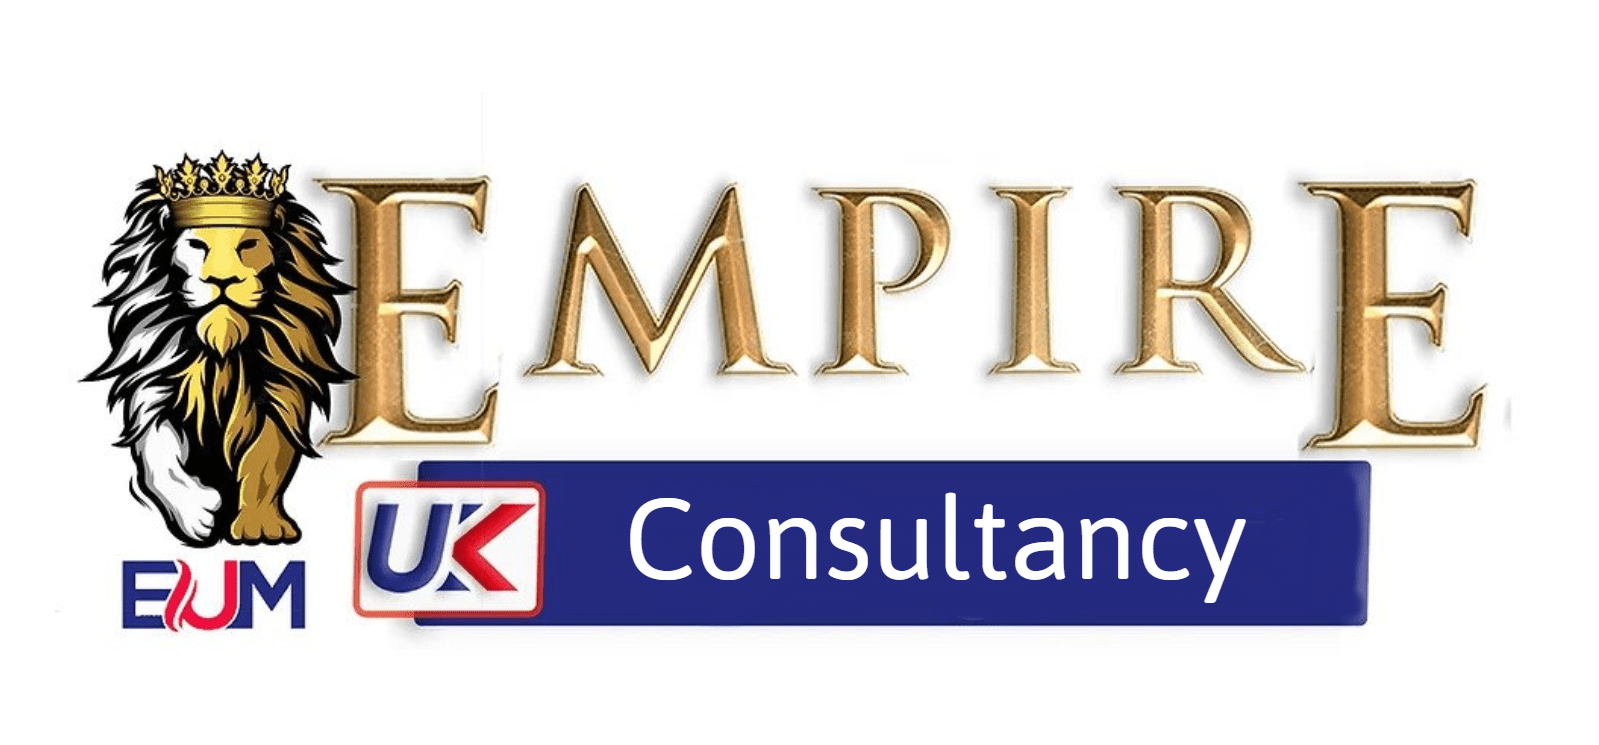 Empire Health Care Services